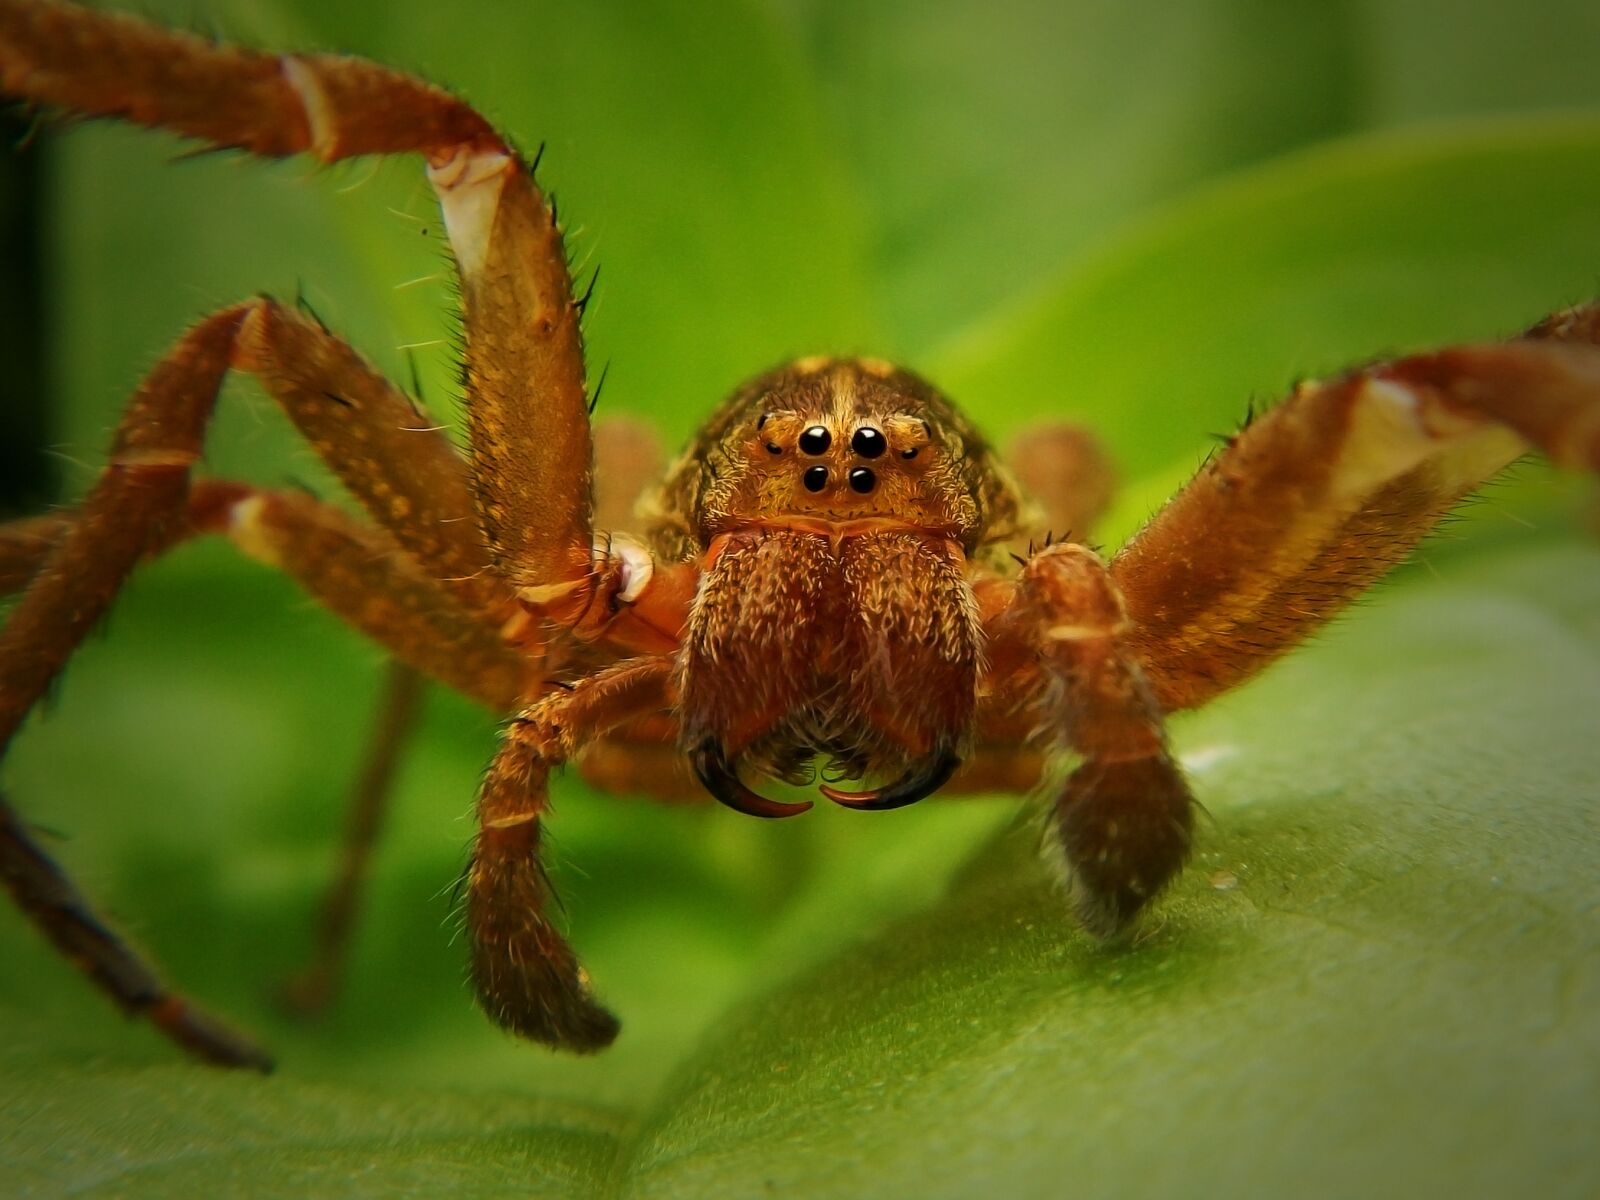 Nikon Coolpix AW110 sample photo. Spider, web, tarantula photography